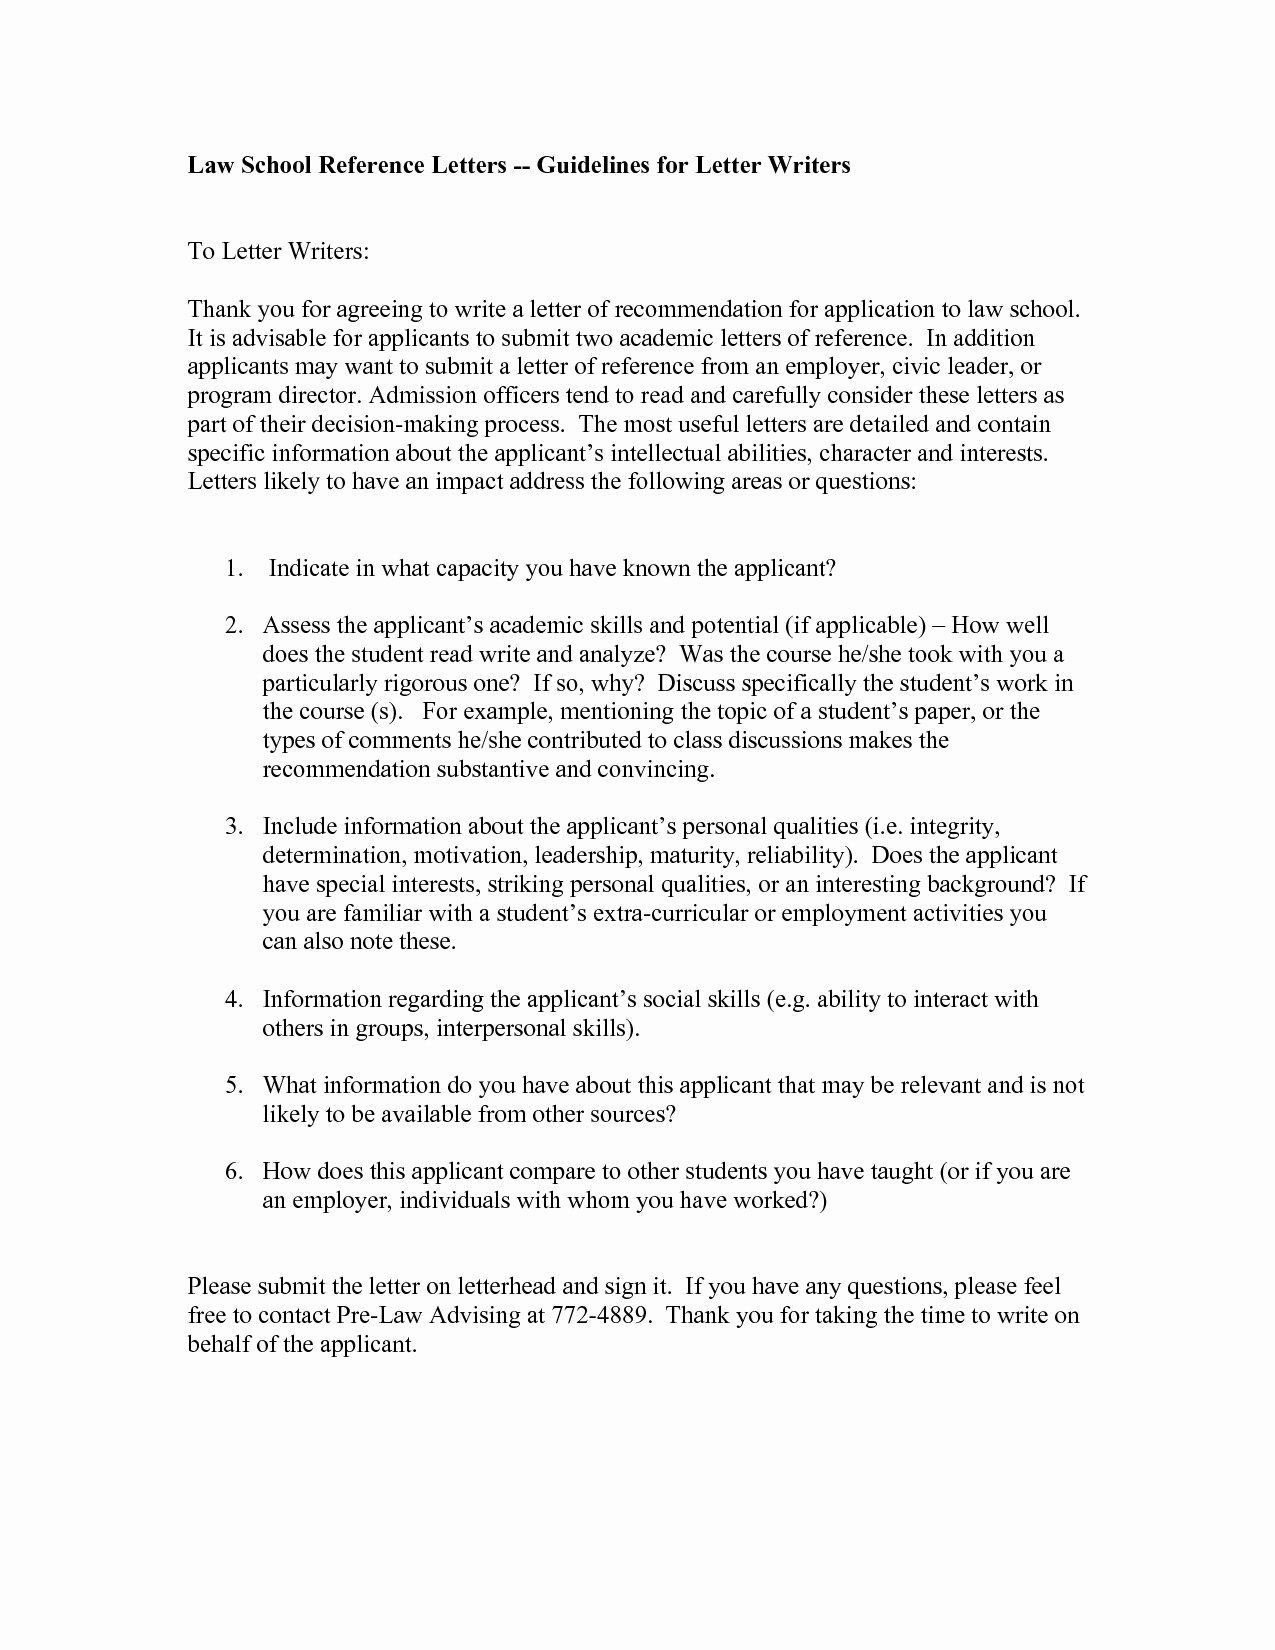 Law School Letter Of Recommendation Unique Letter Re Mendation for Law School